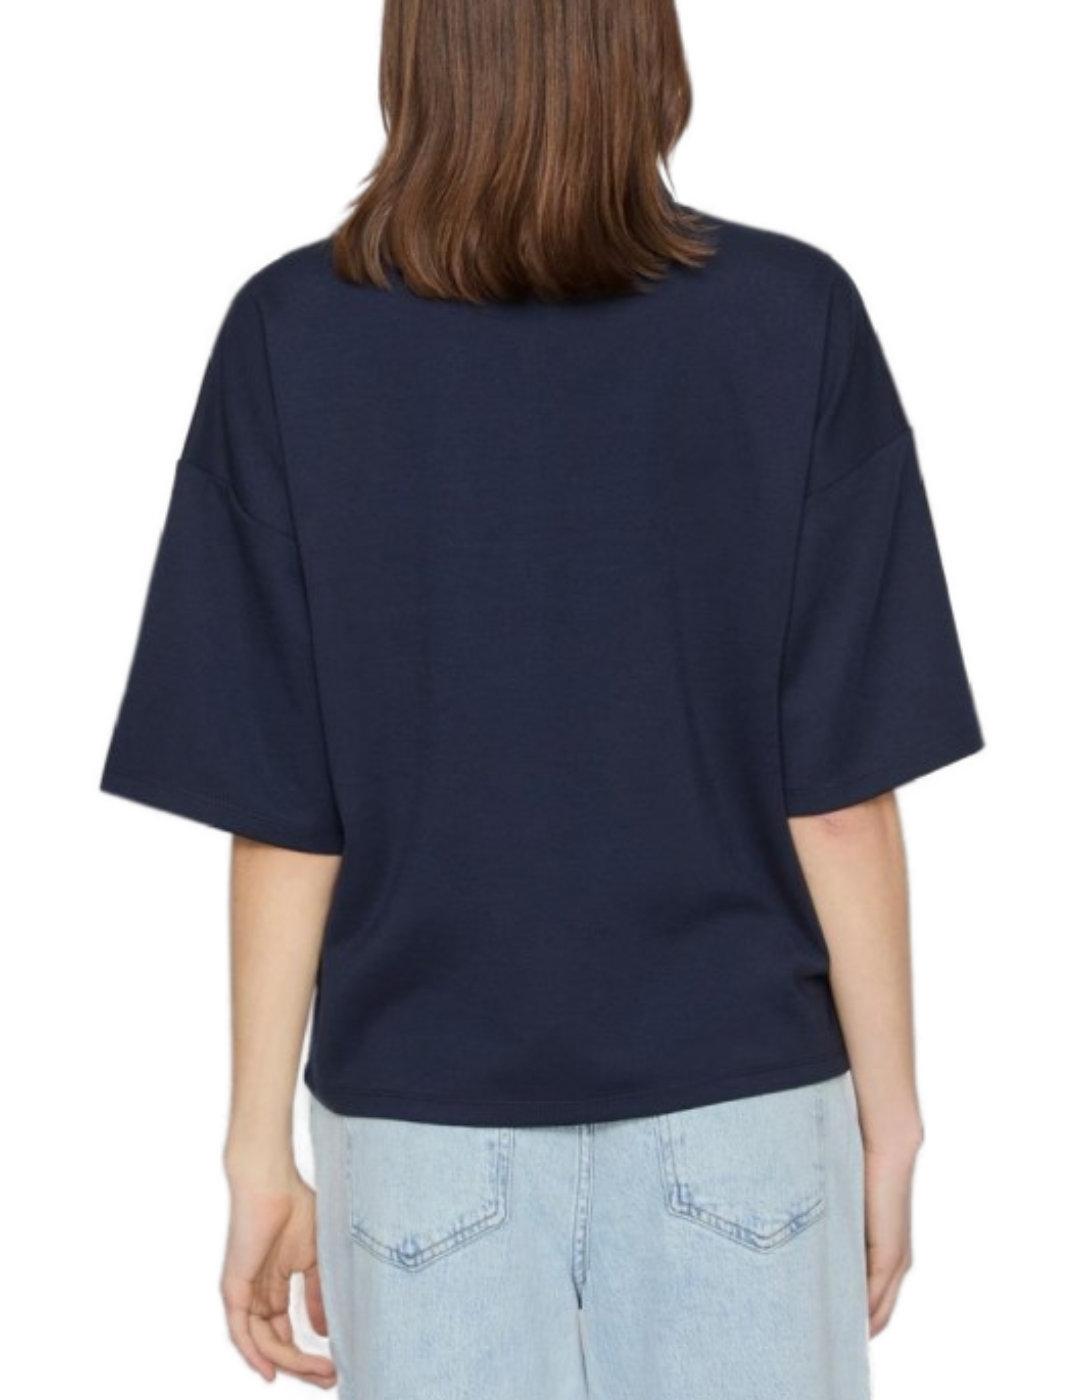 Camiseta Vila Siffi cuello alto marino manga corta de mujer